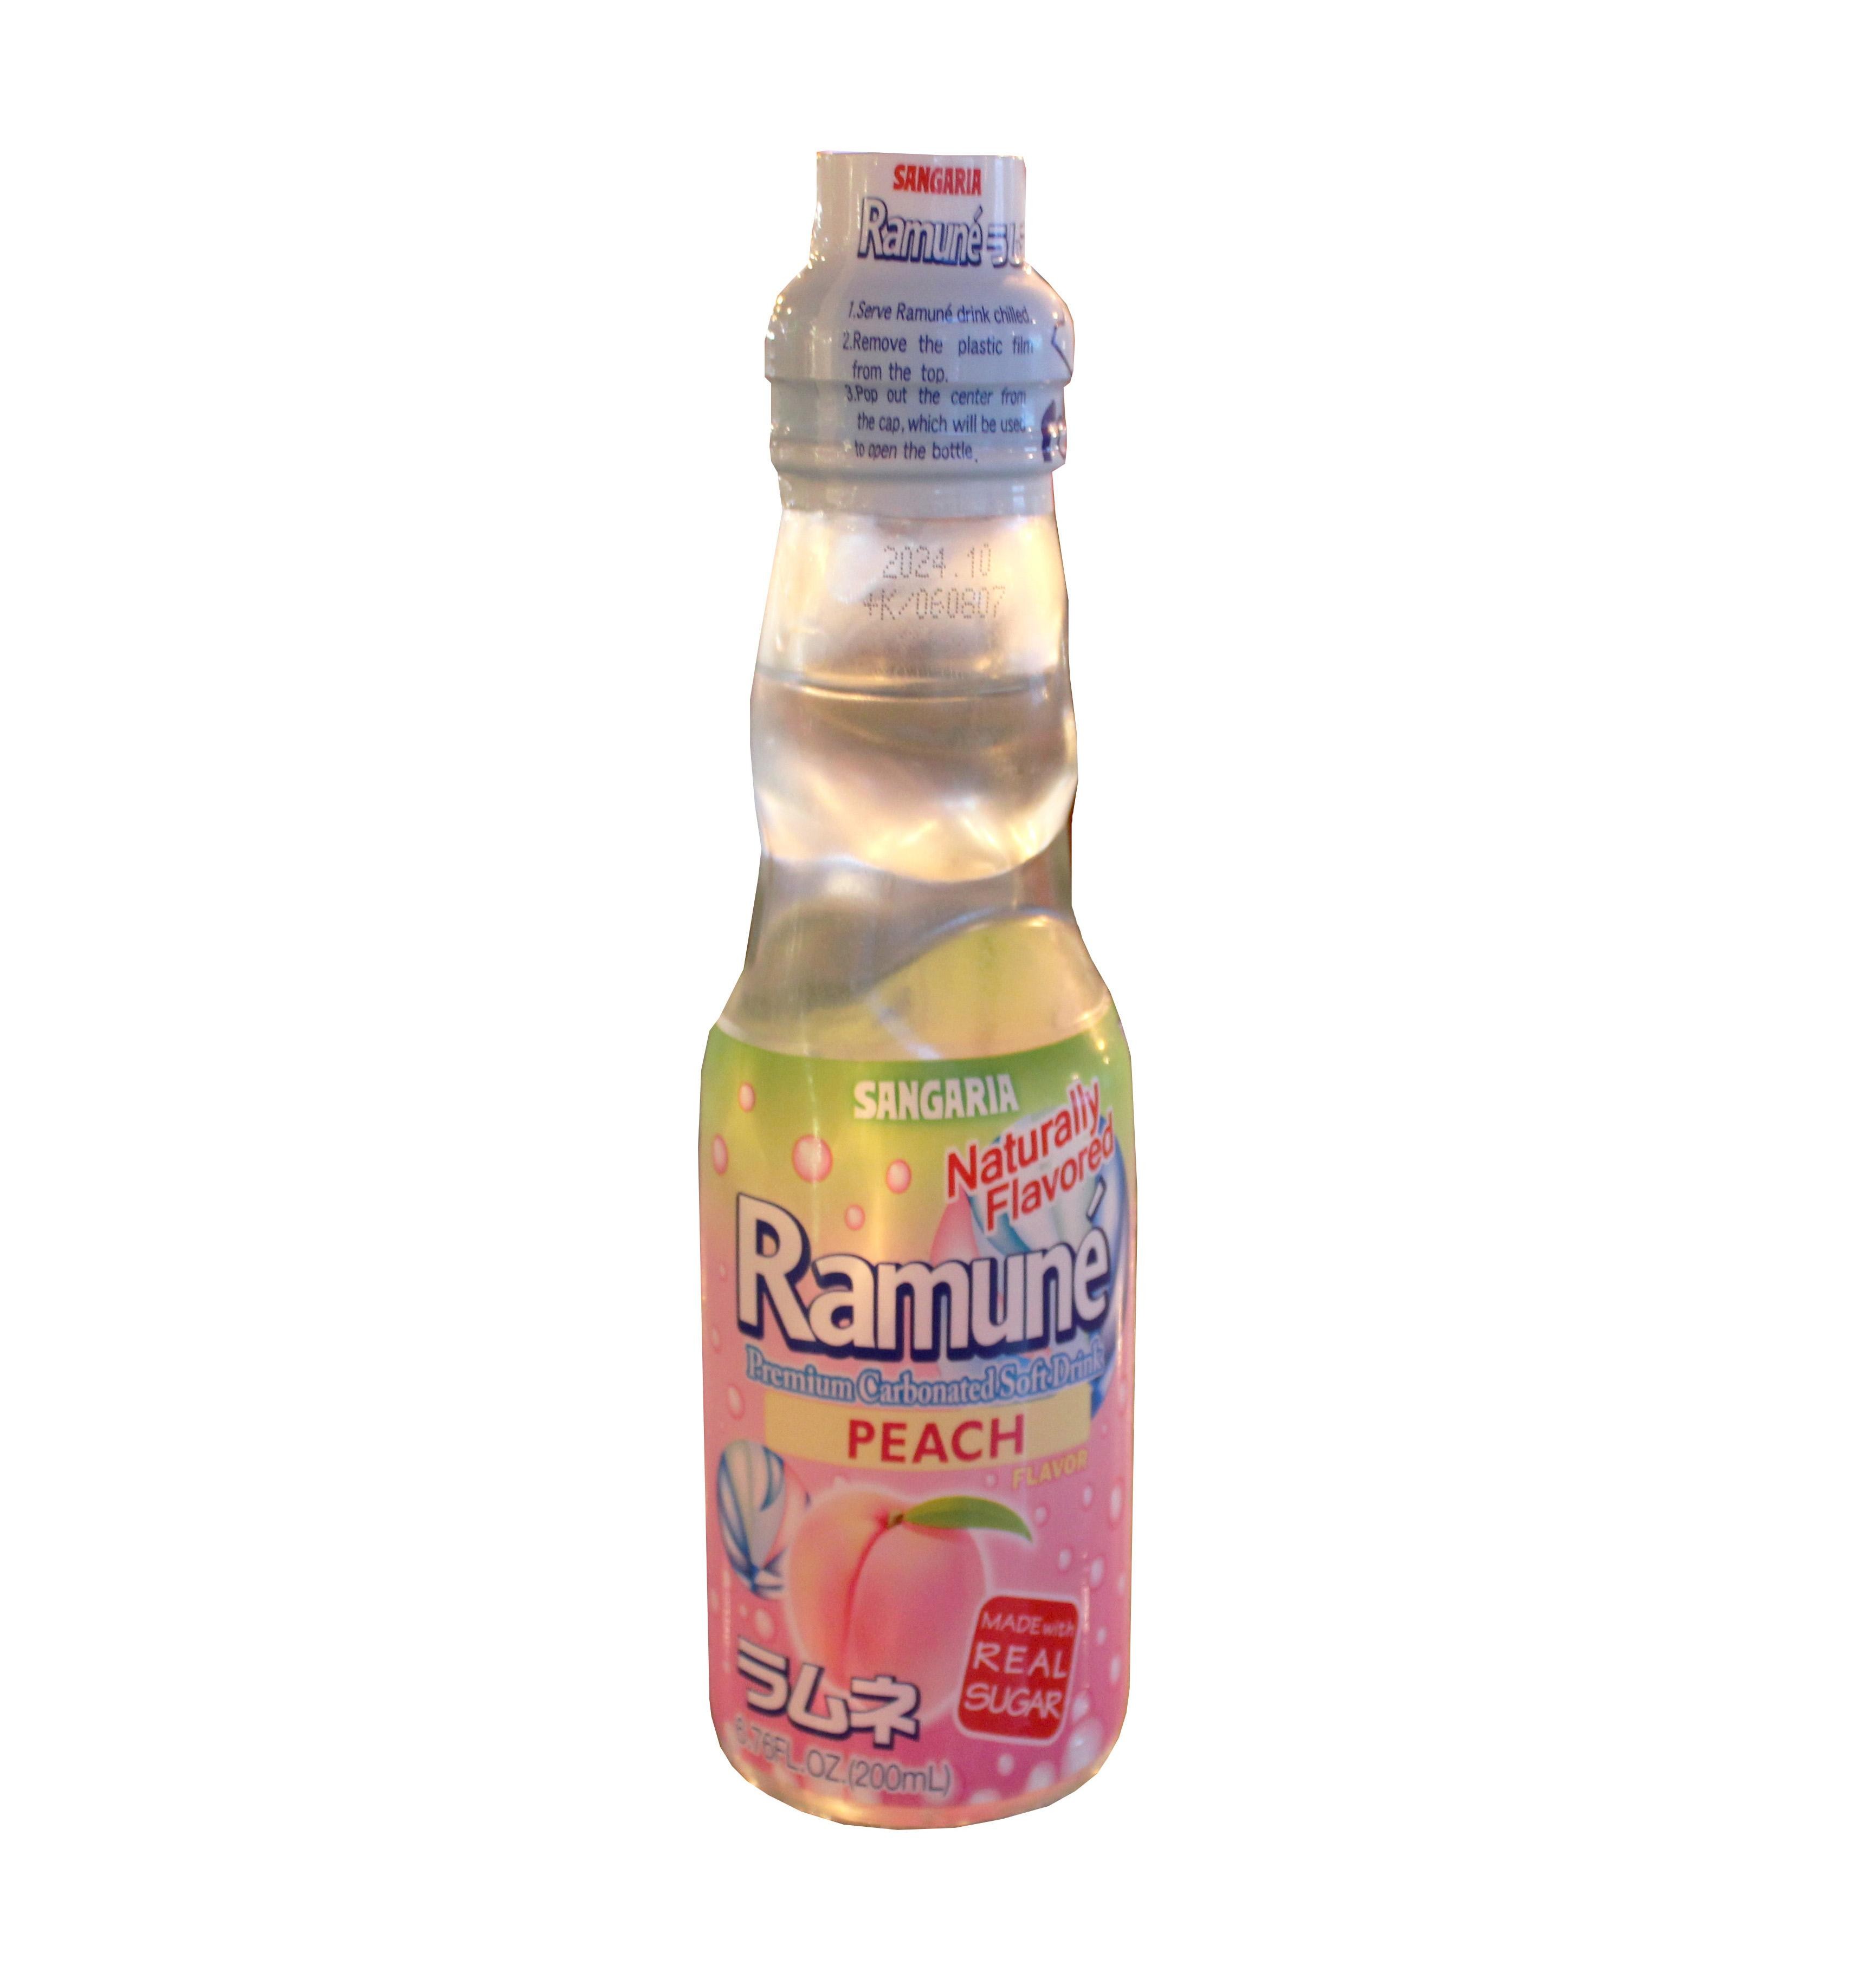 Ramune Peach Flavor, Sangaria Brand